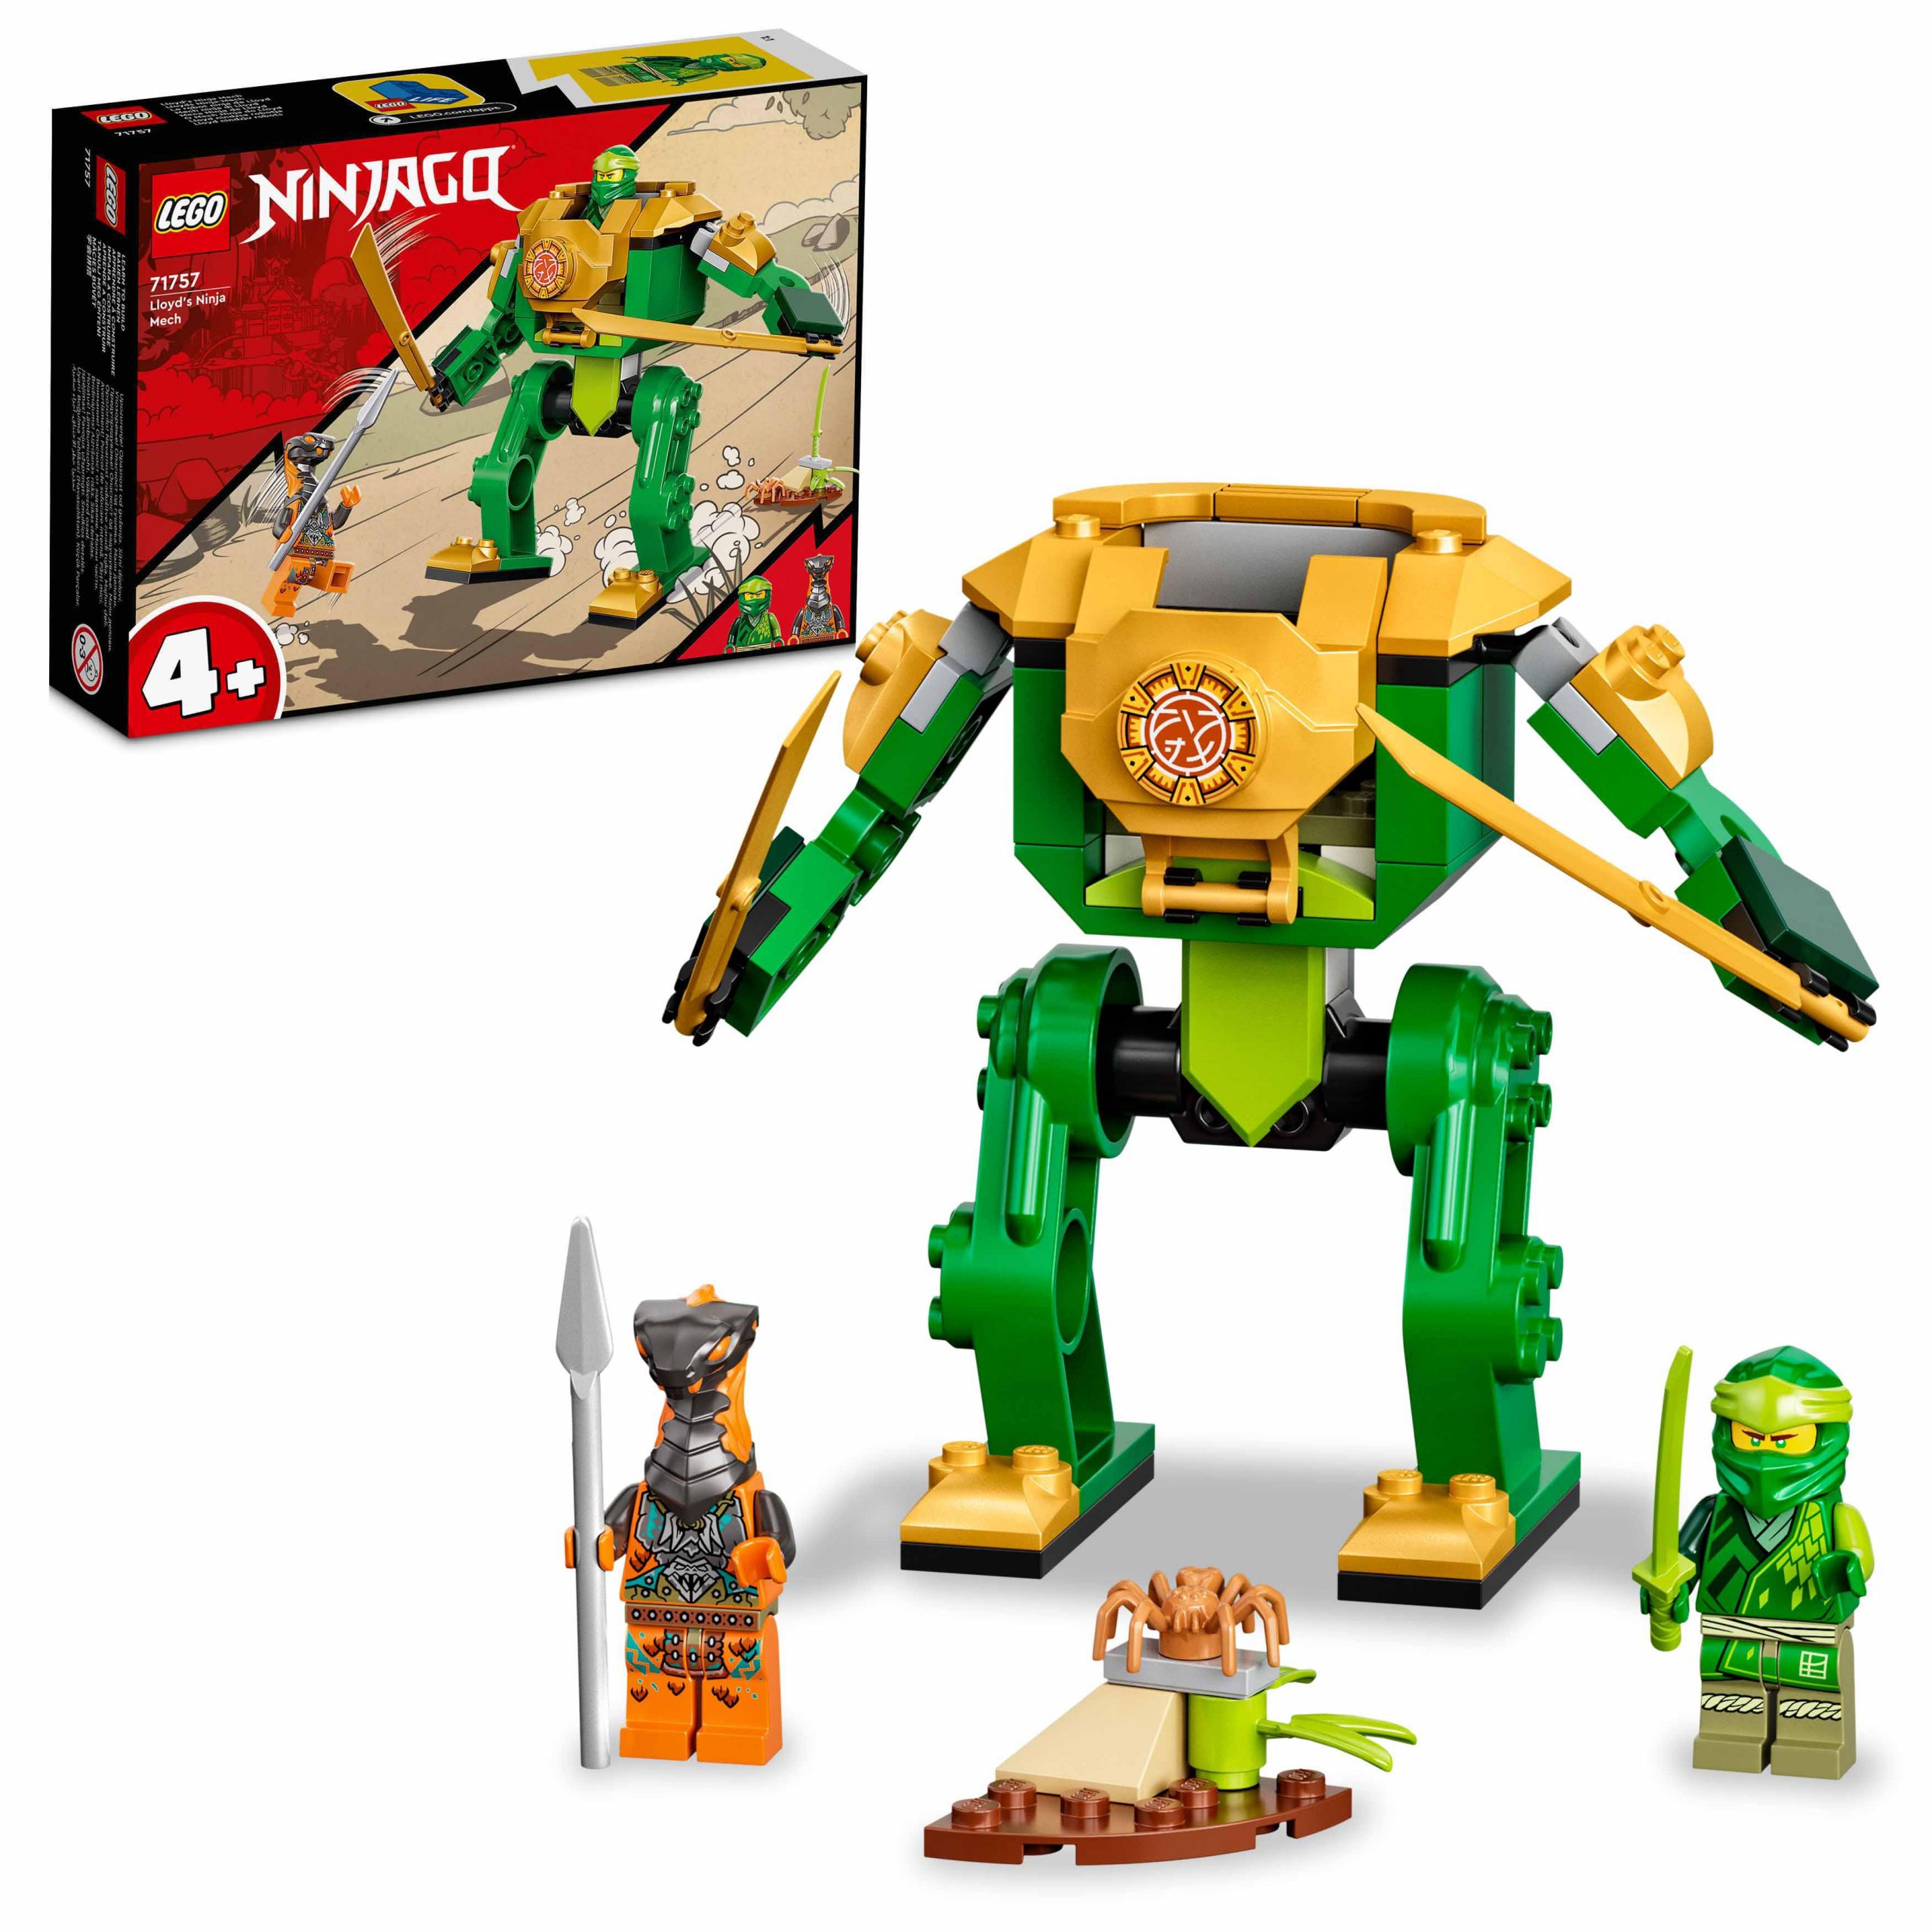 Lego ninjago mech ninja di lloyd, set per bambini dai 4 anni in su, con giocattolo snodabile e guerriero serpente, 71757 - LEGO NINJAGO, Lego